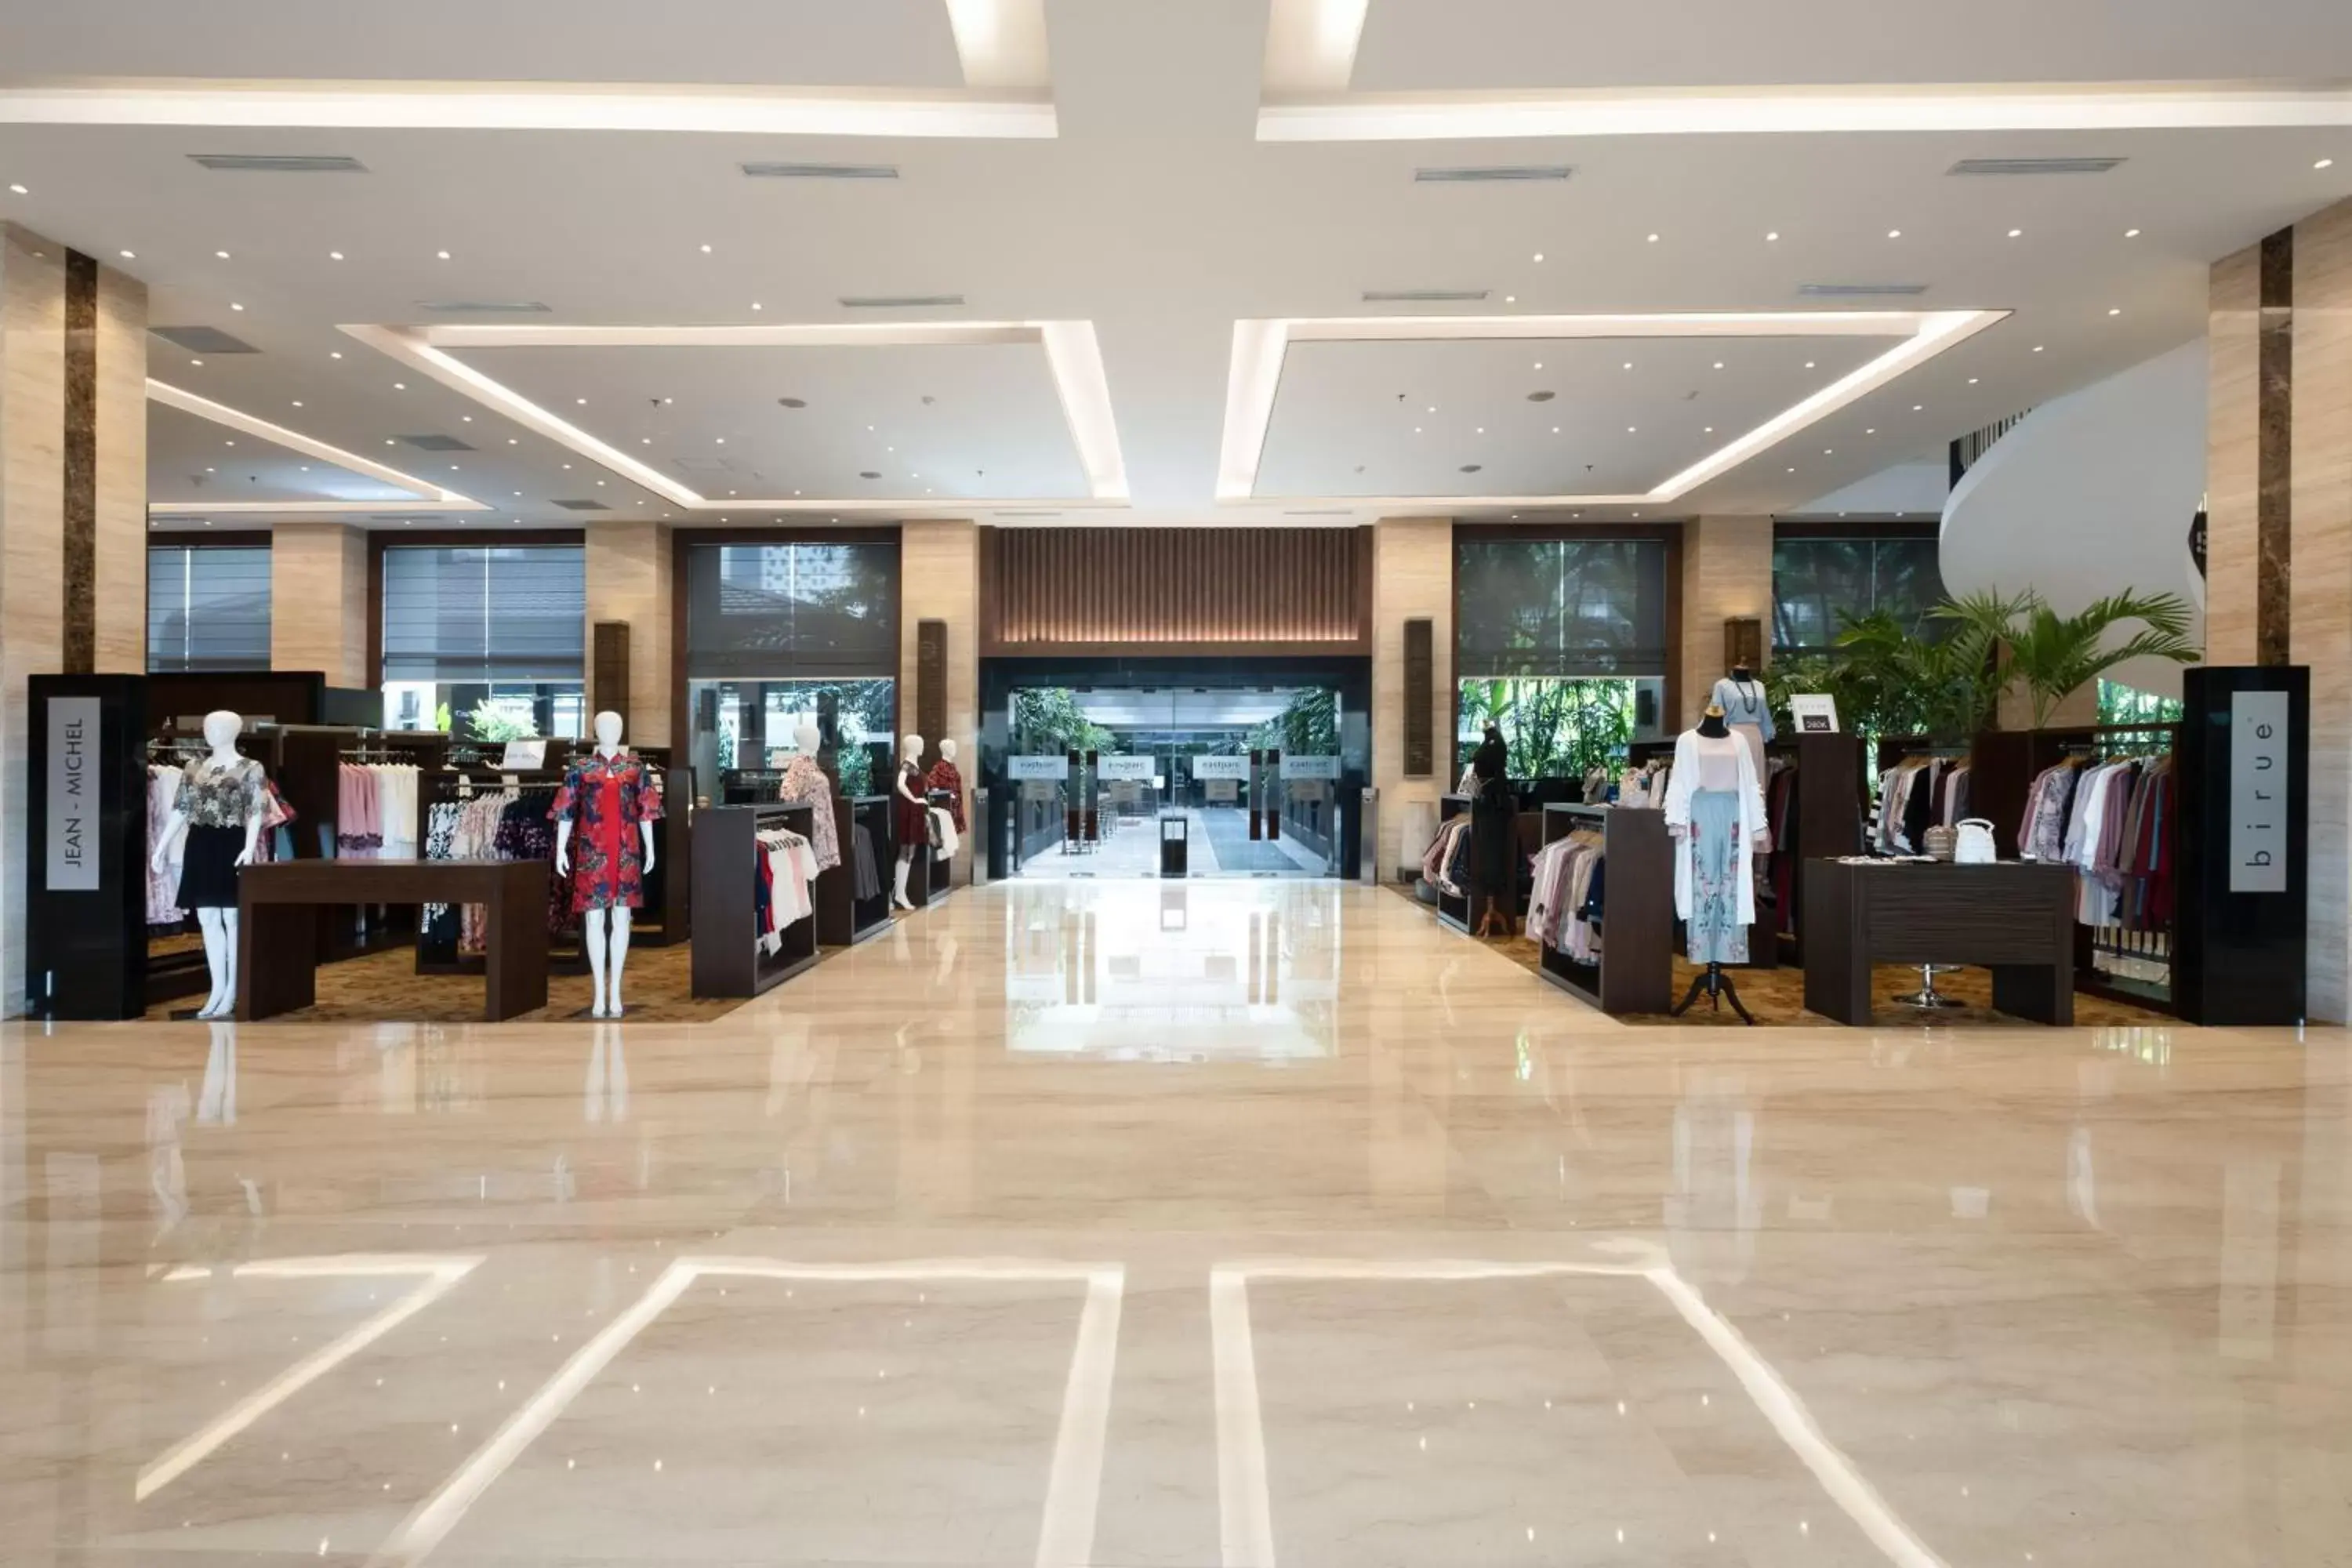 Lobby or reception in Eastparc Hotel Yogyakarta